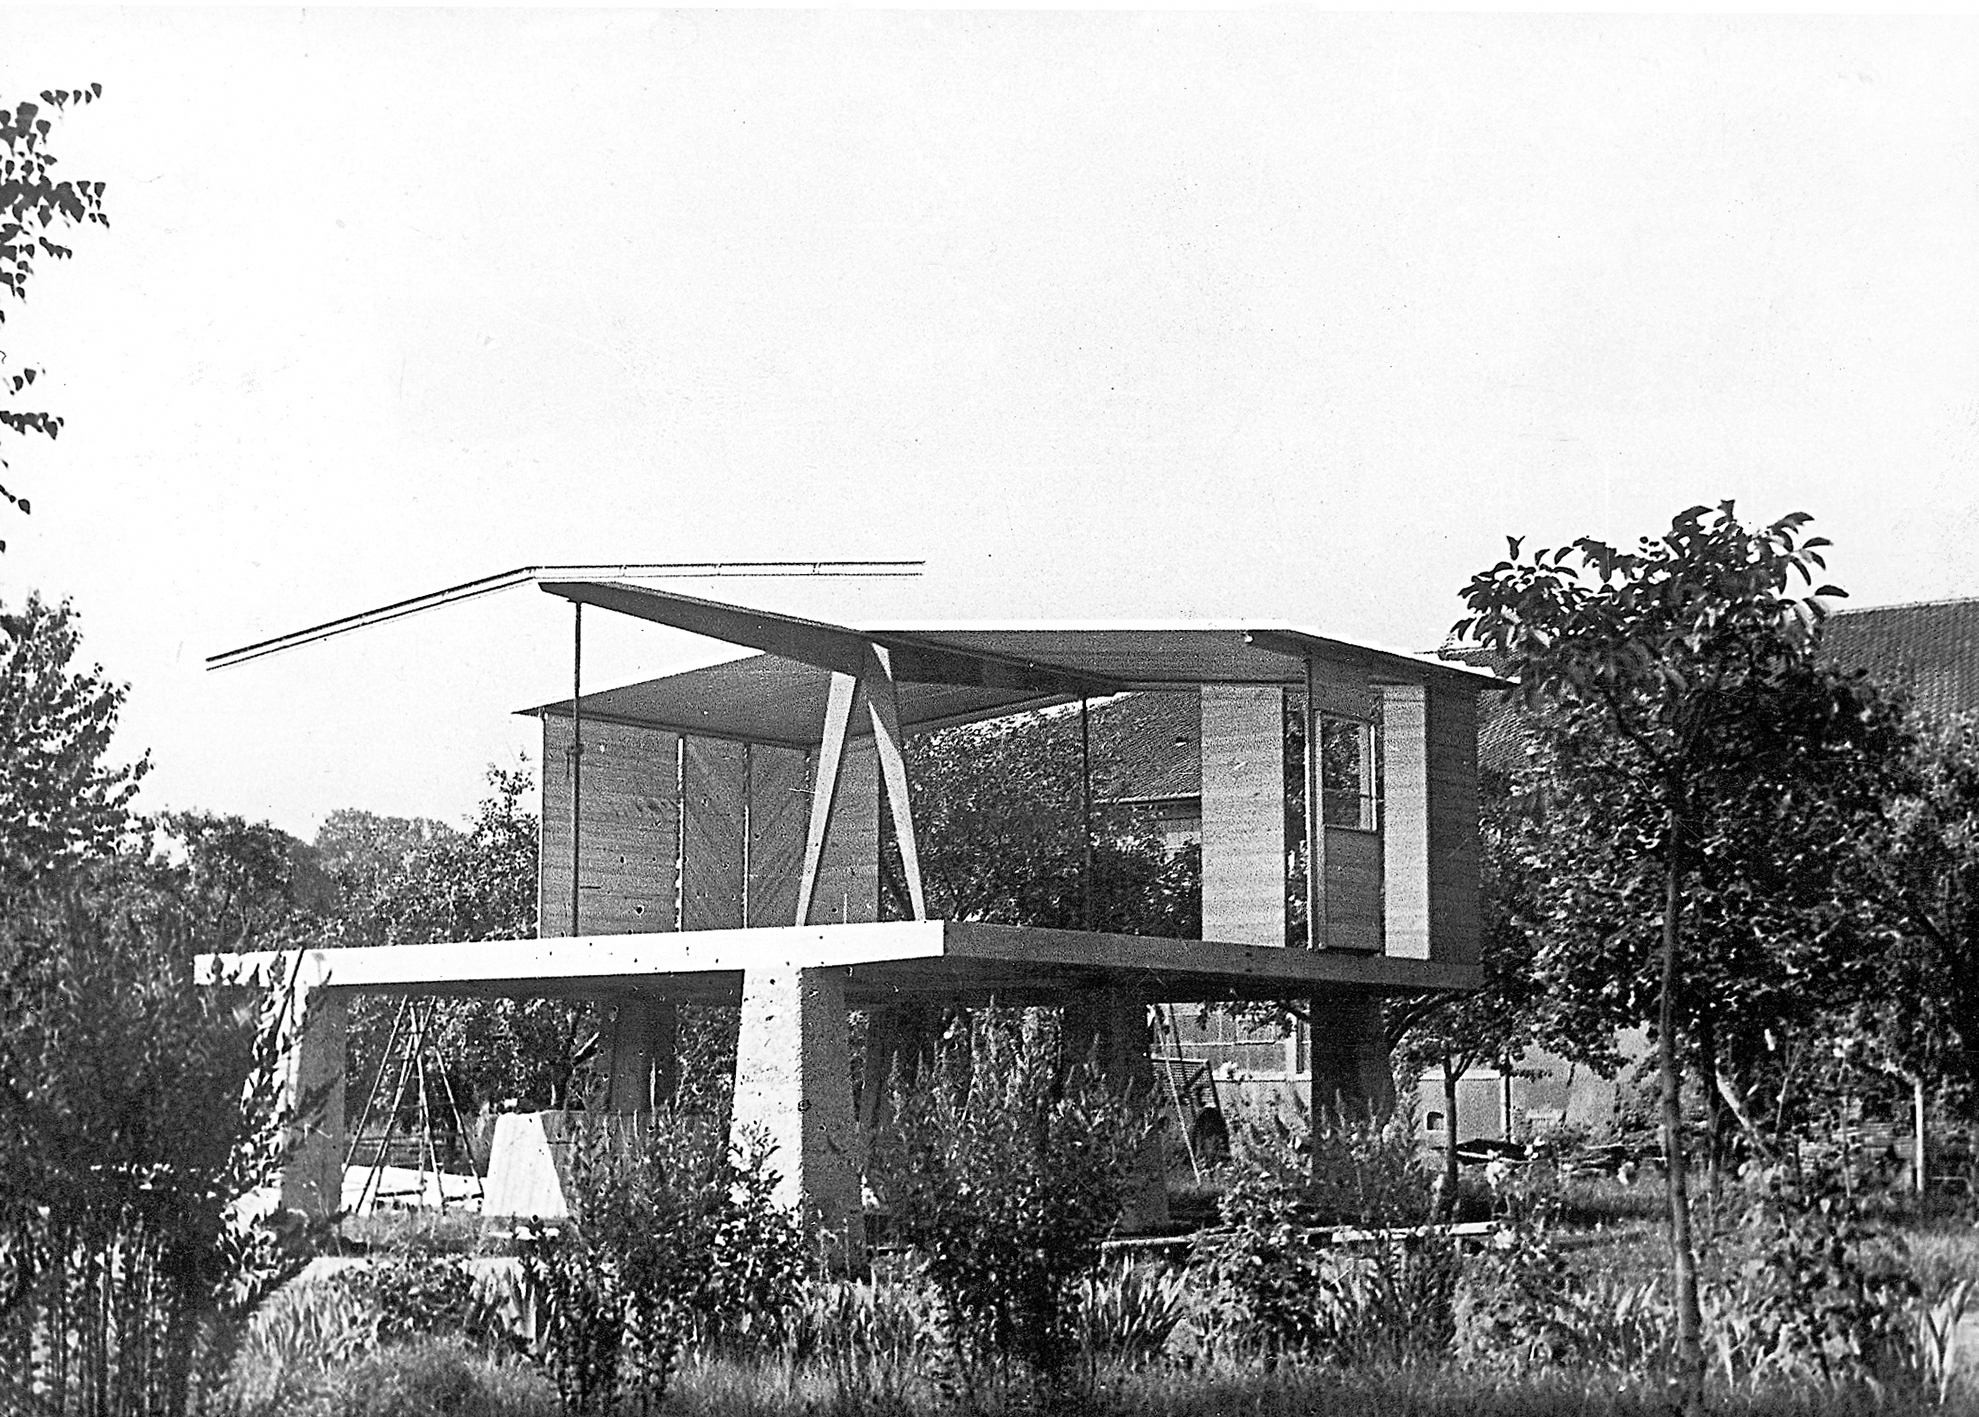 Maison démontable 8x8. Montage du pavillon, usine Permali/Le Bois bakélisé, bureau de René Schvartz, Maxéville, 1945.